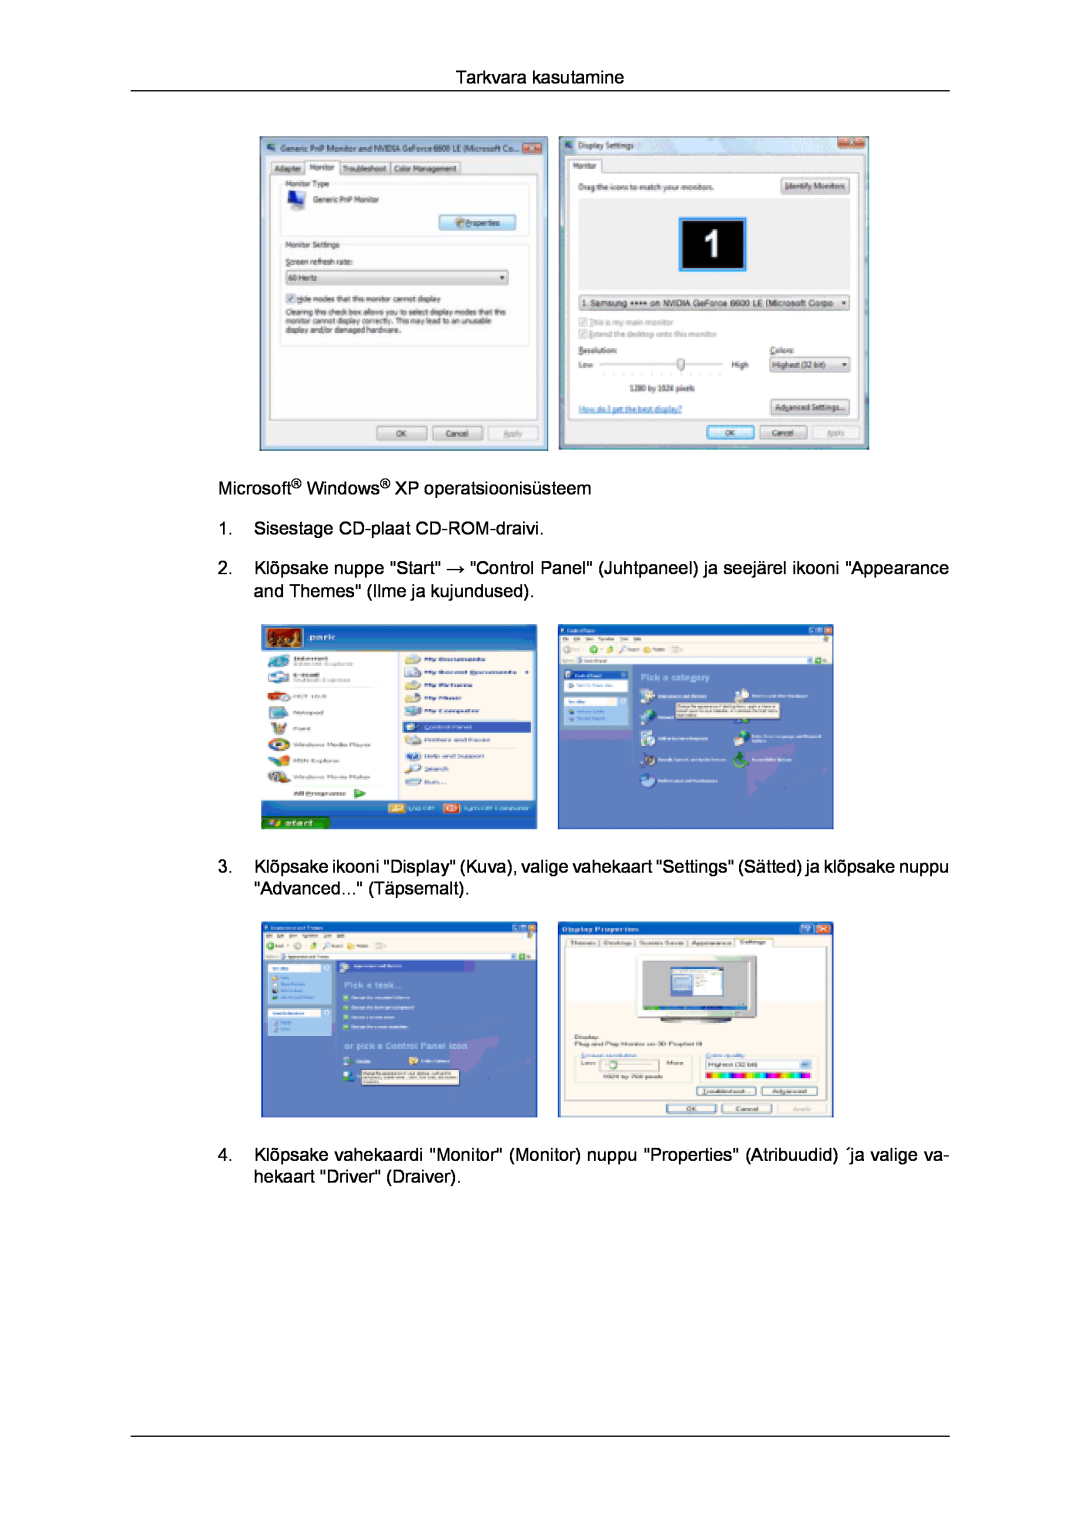 Samsung LS20TDDSUV/EN manual Tarkvara kasutamine Microsoft Windows XP operatsioonisüsteem, Sisestage CD-plaat CD-ROM-draivi 